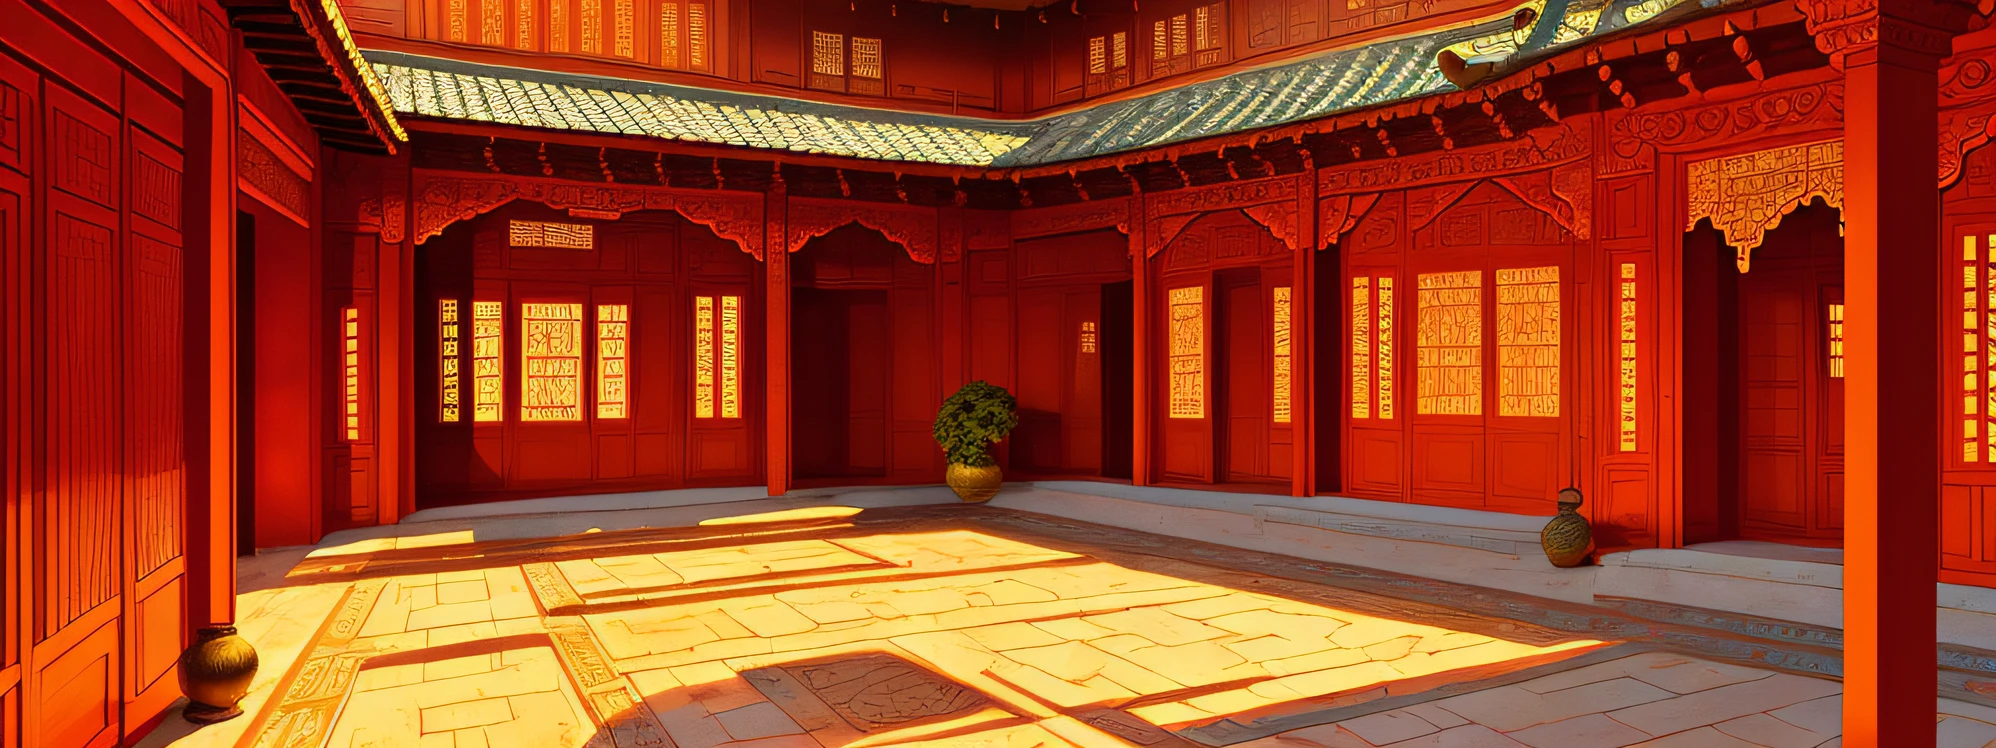 最初の仕事, より良い品質, 高品質, 非常に詳細な, 中国の中庭の列, 写実的な絵で描かれた東インドの宮殿